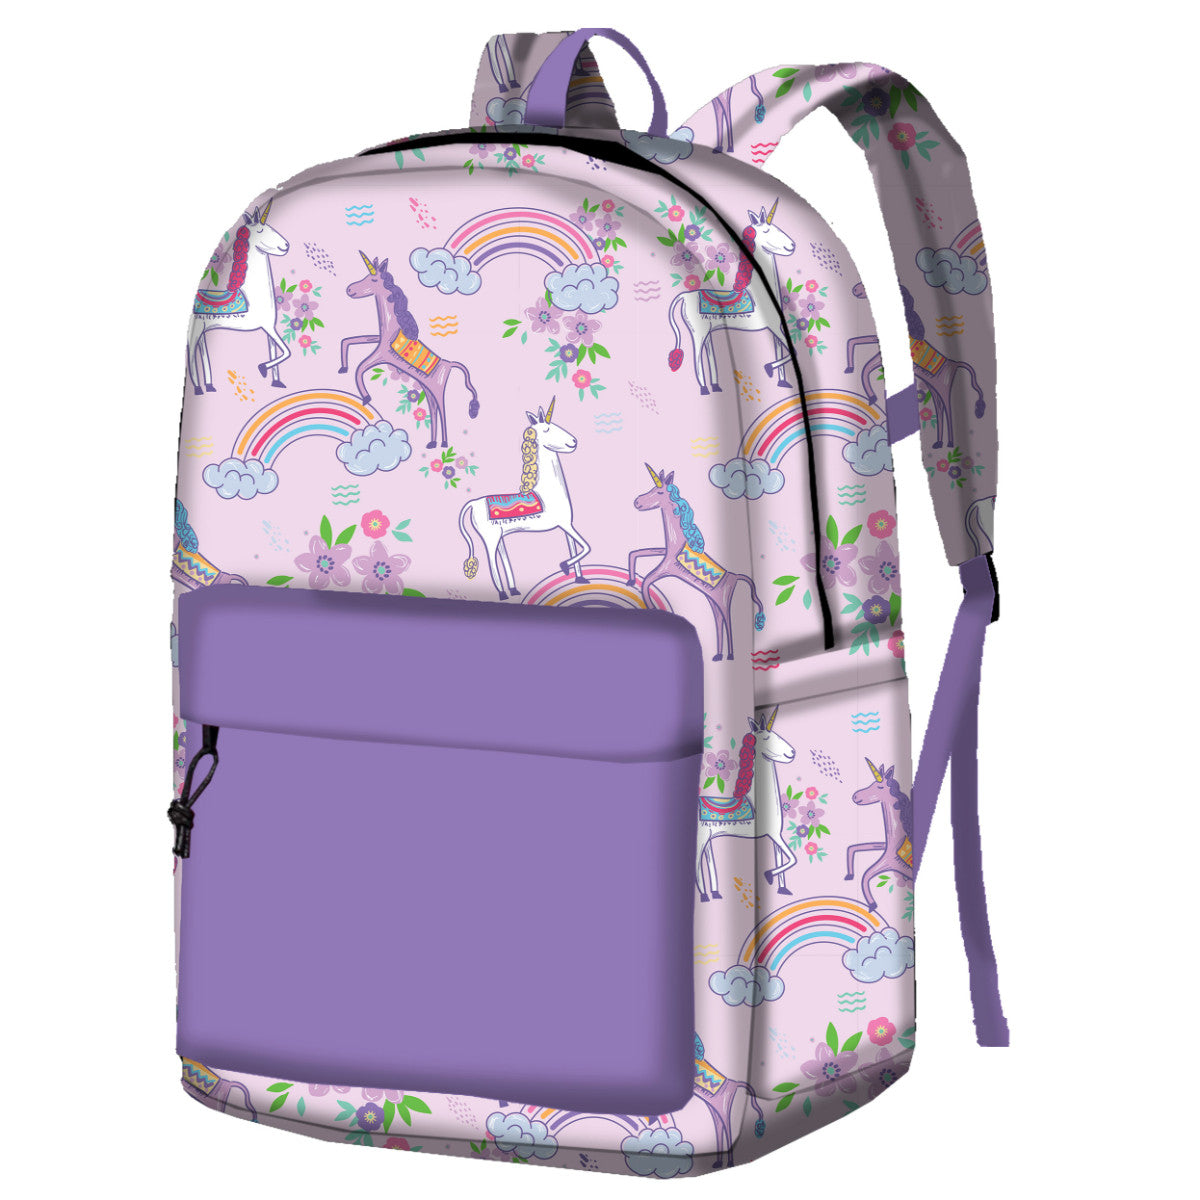 Kid's Magical Backpack